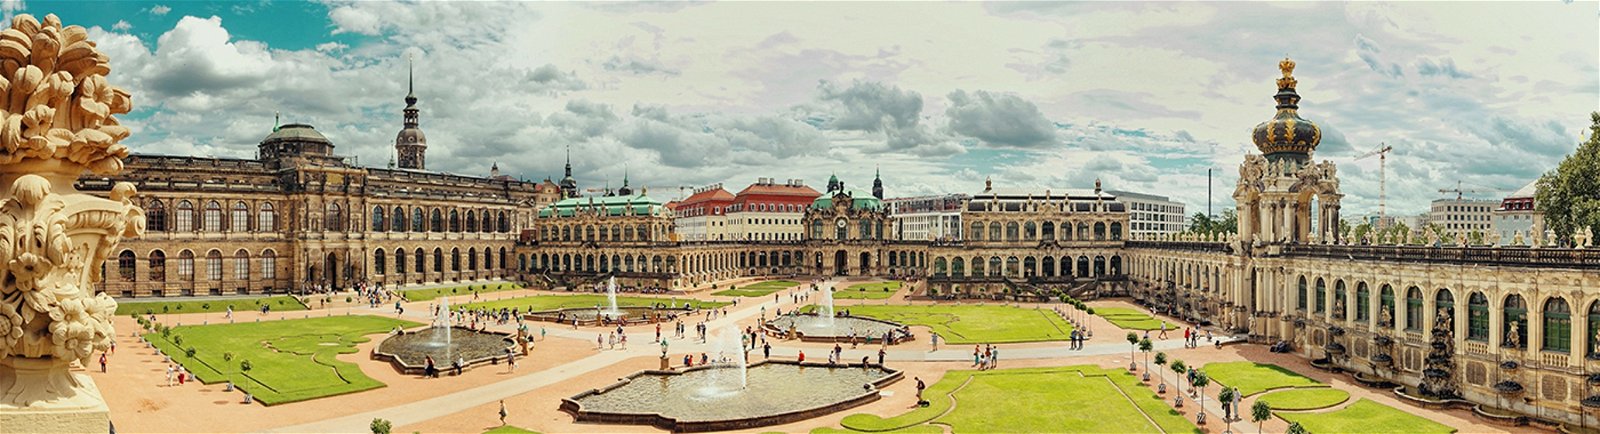 Städtereise nach Dresden